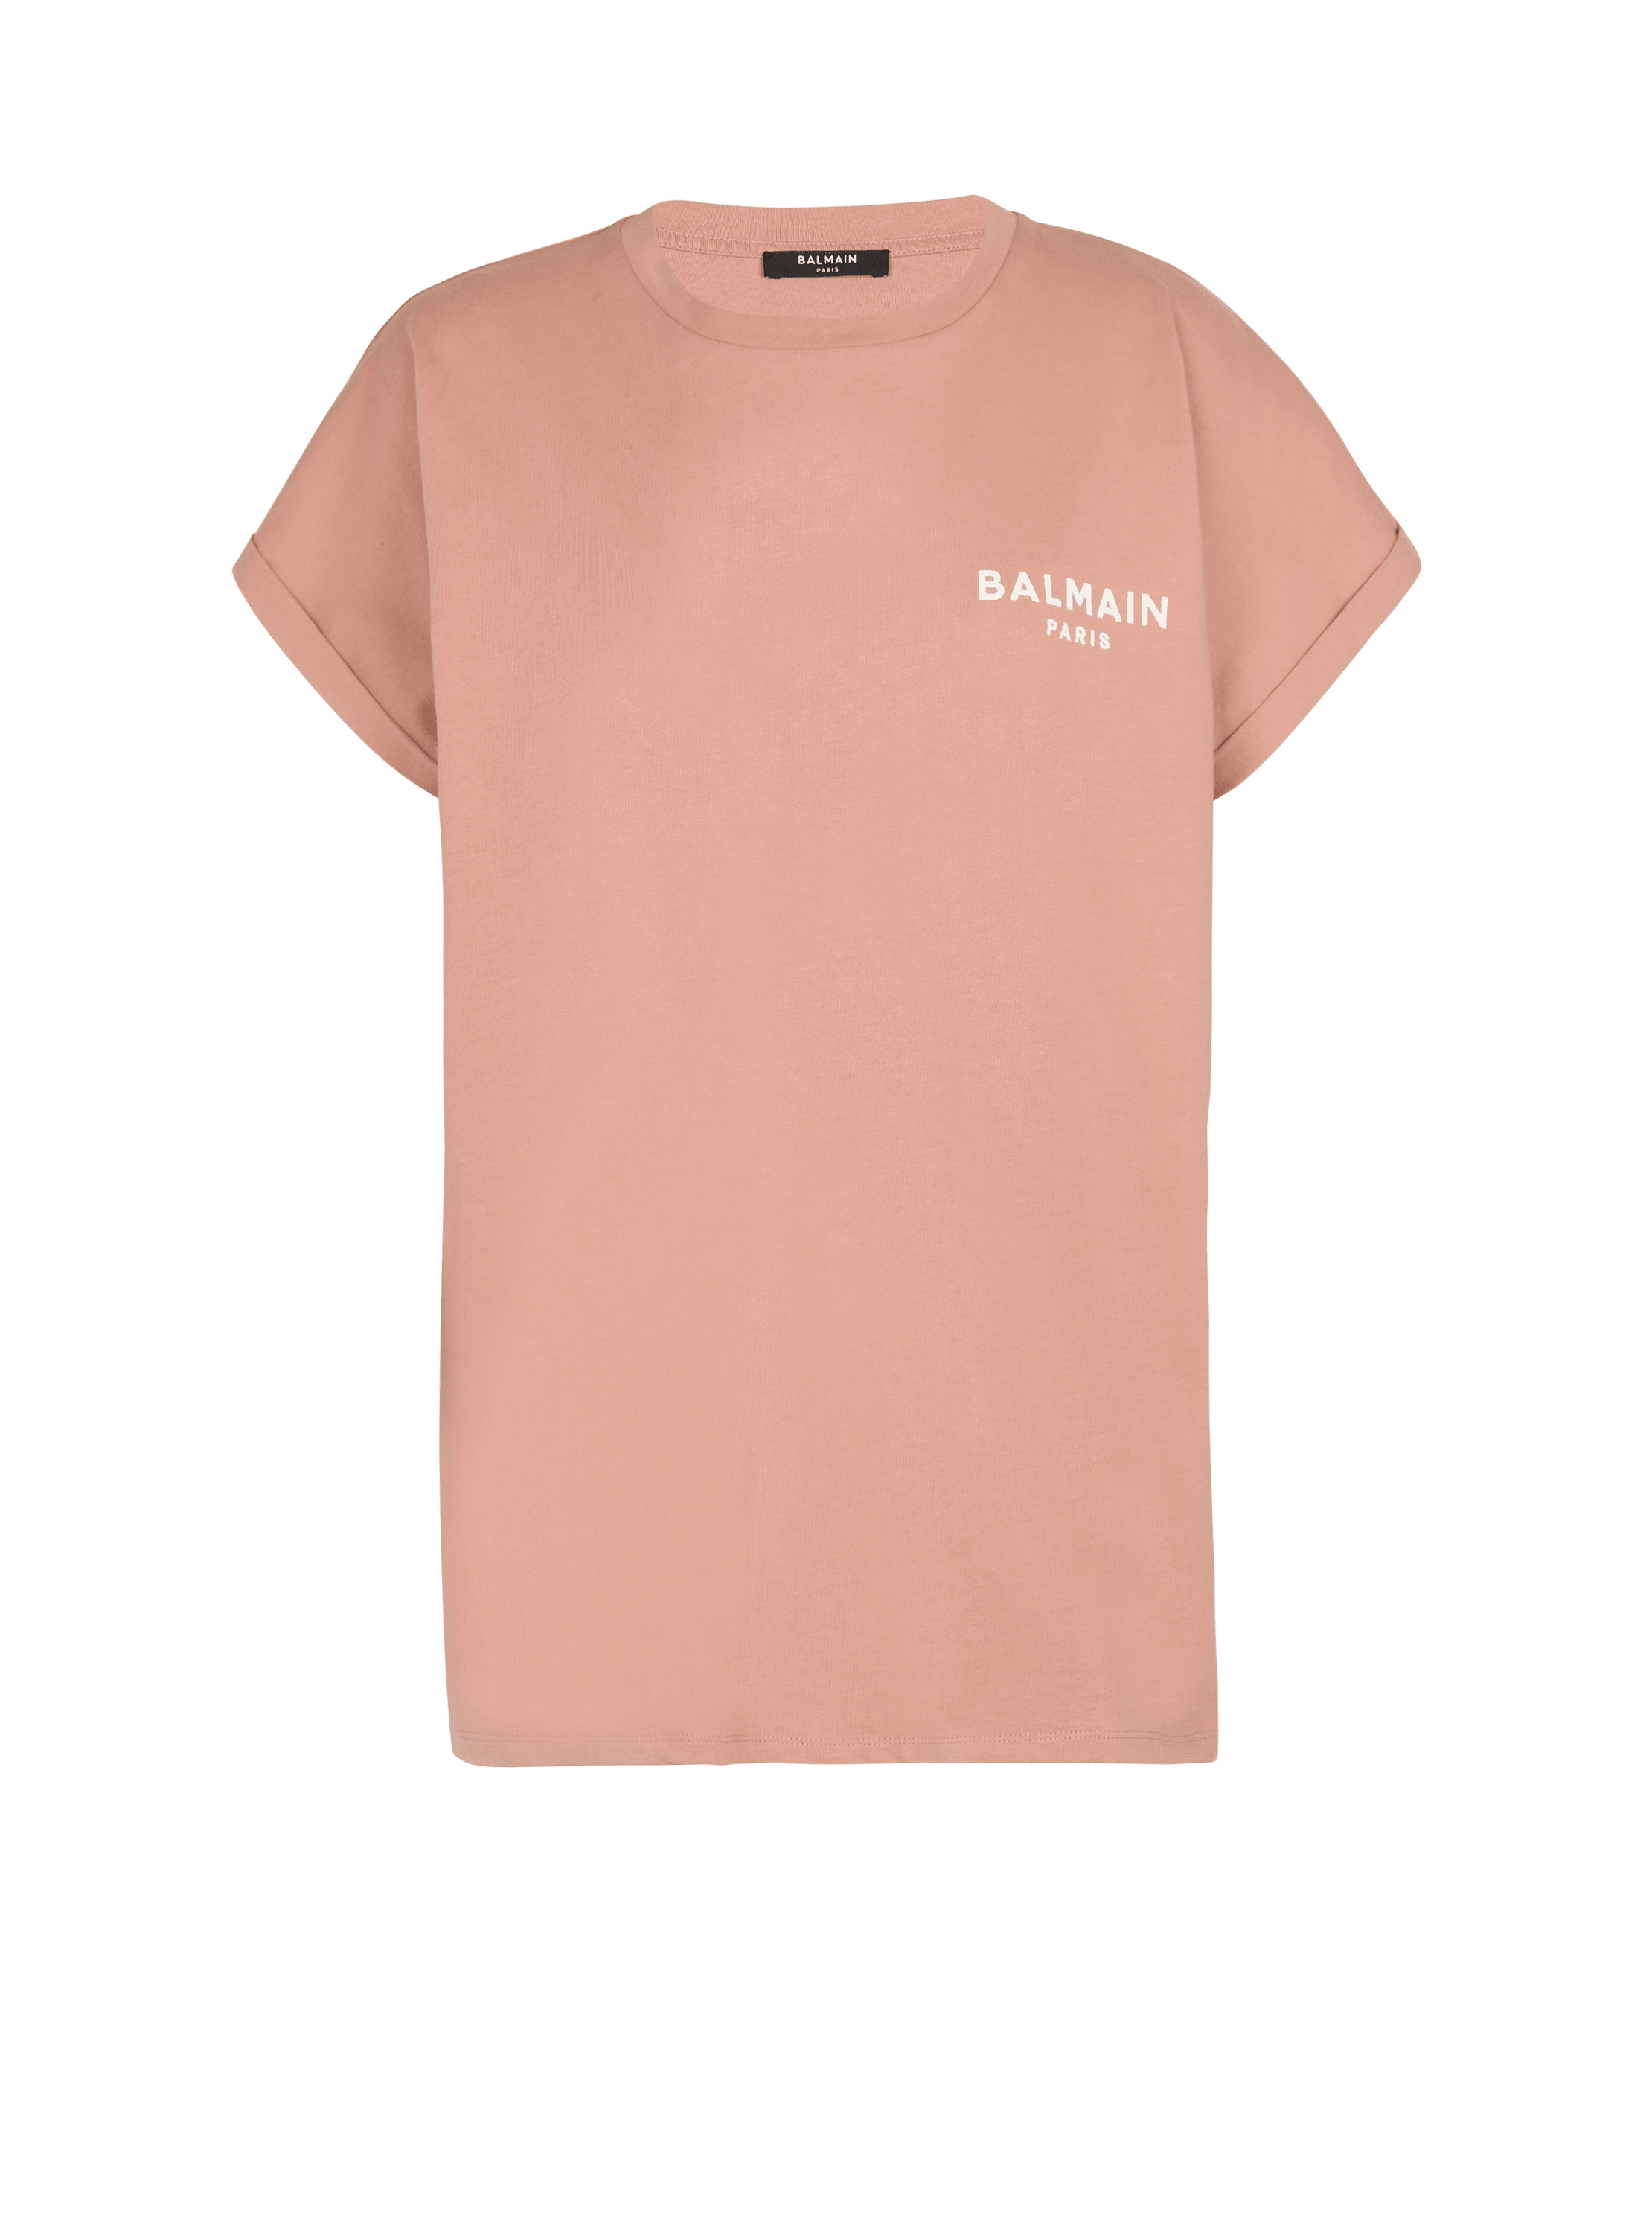 Camiseta de algodón ecológico con el logotipo de Balmain estampado, rose, hi-res